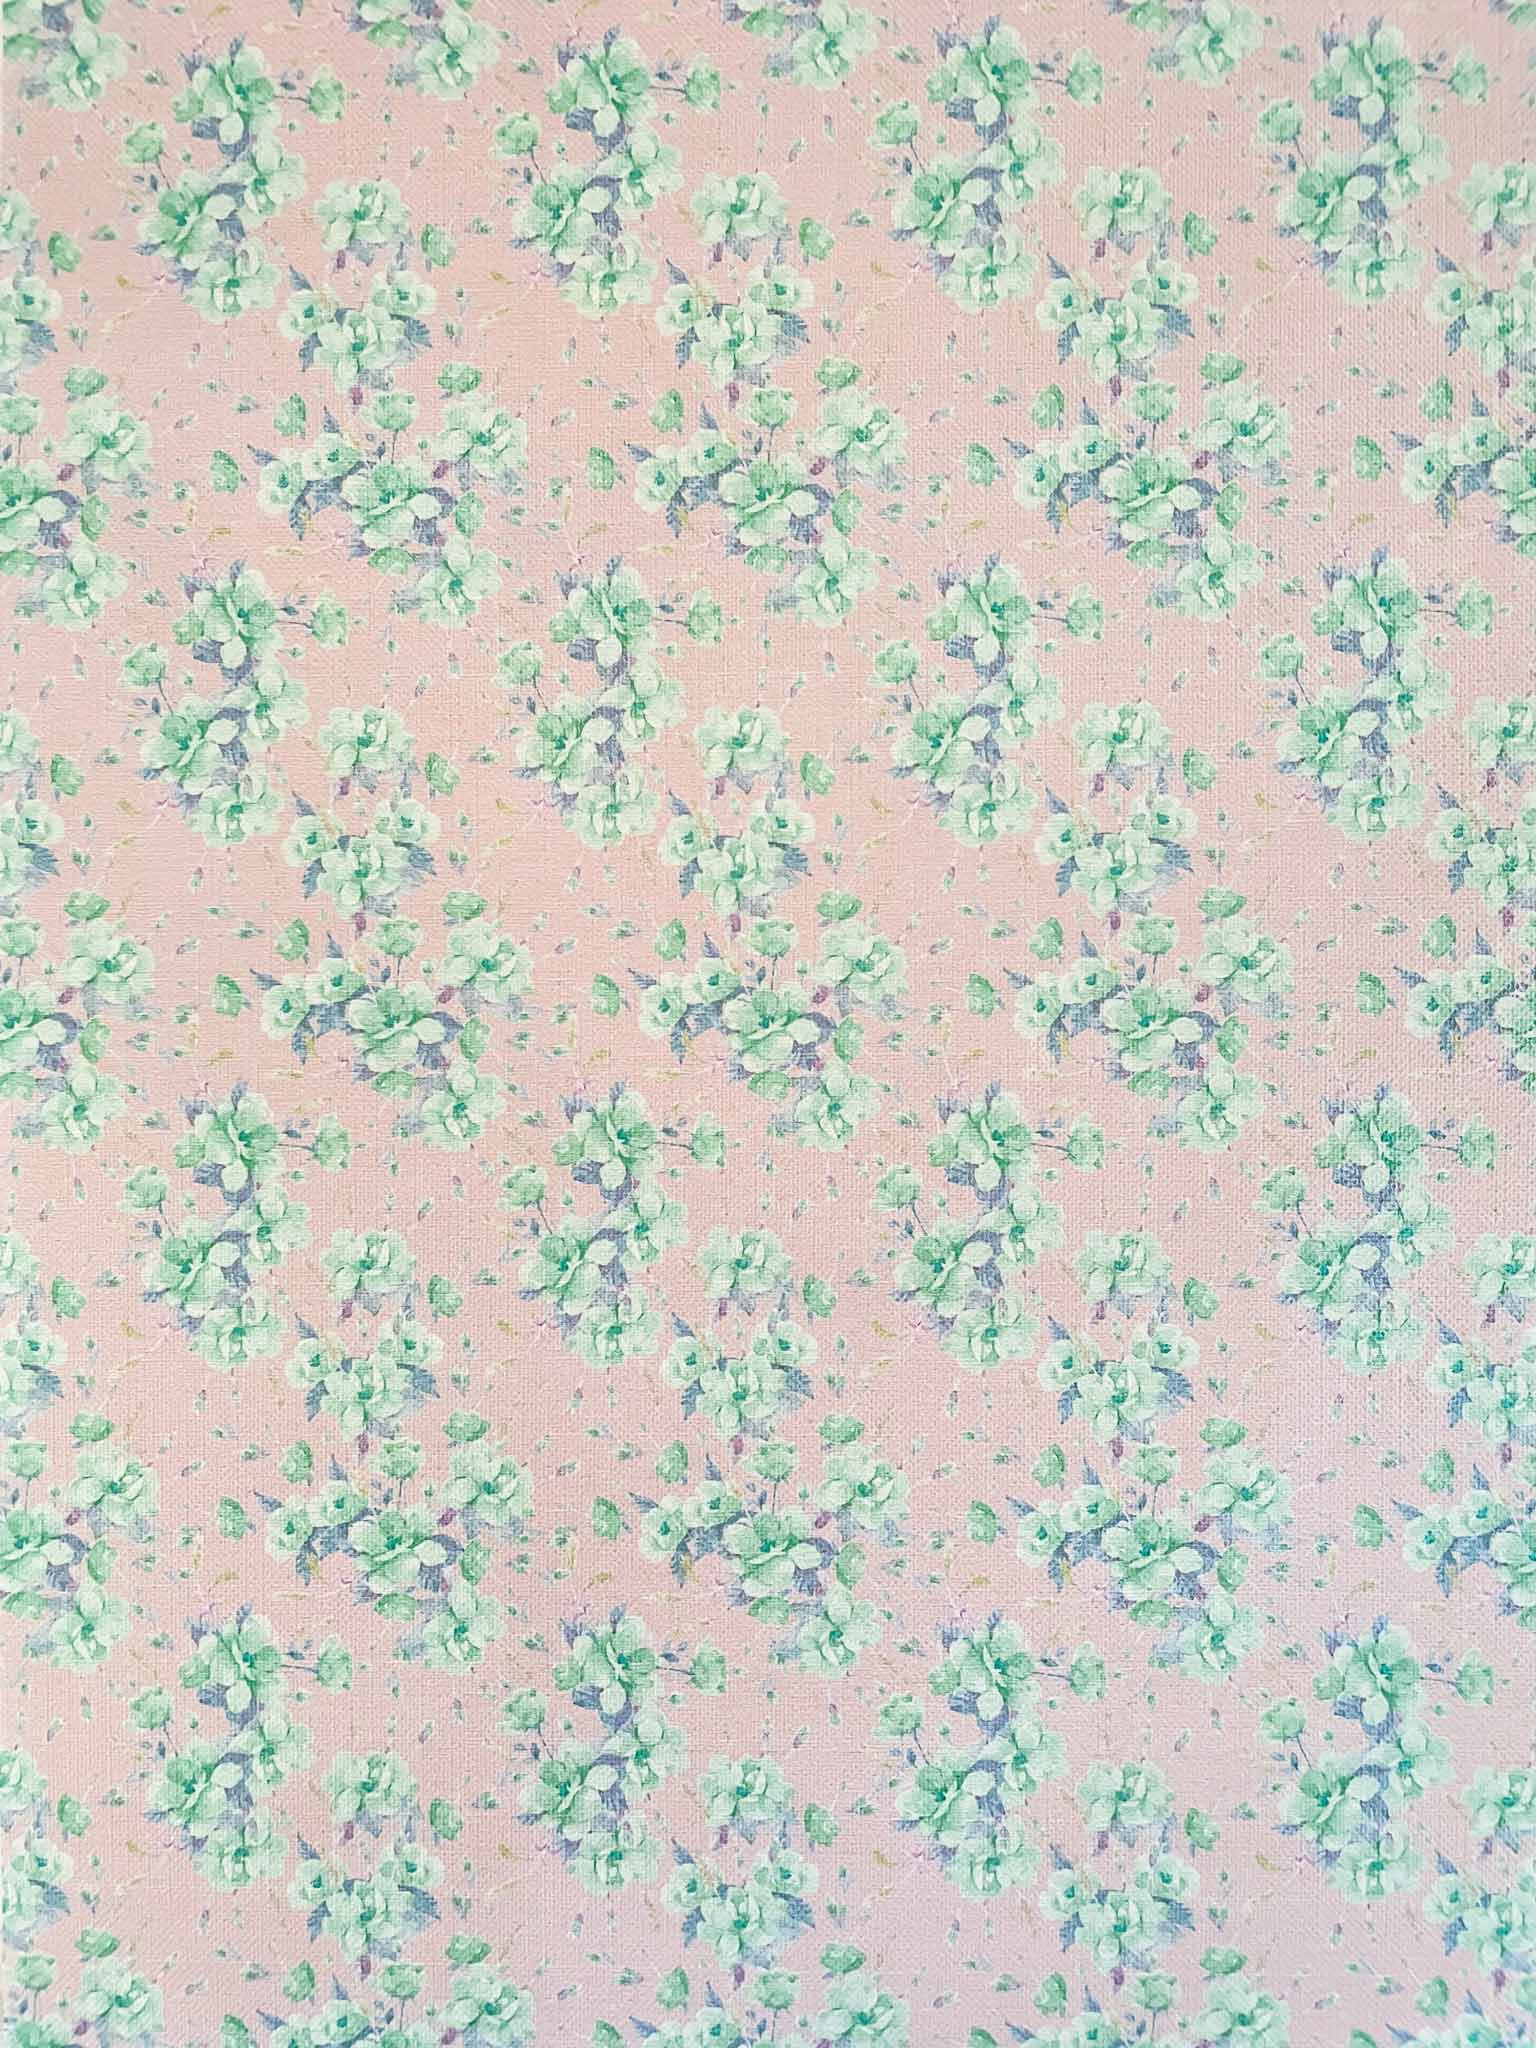 blossom-pink-a4-patterned-paper-vintage